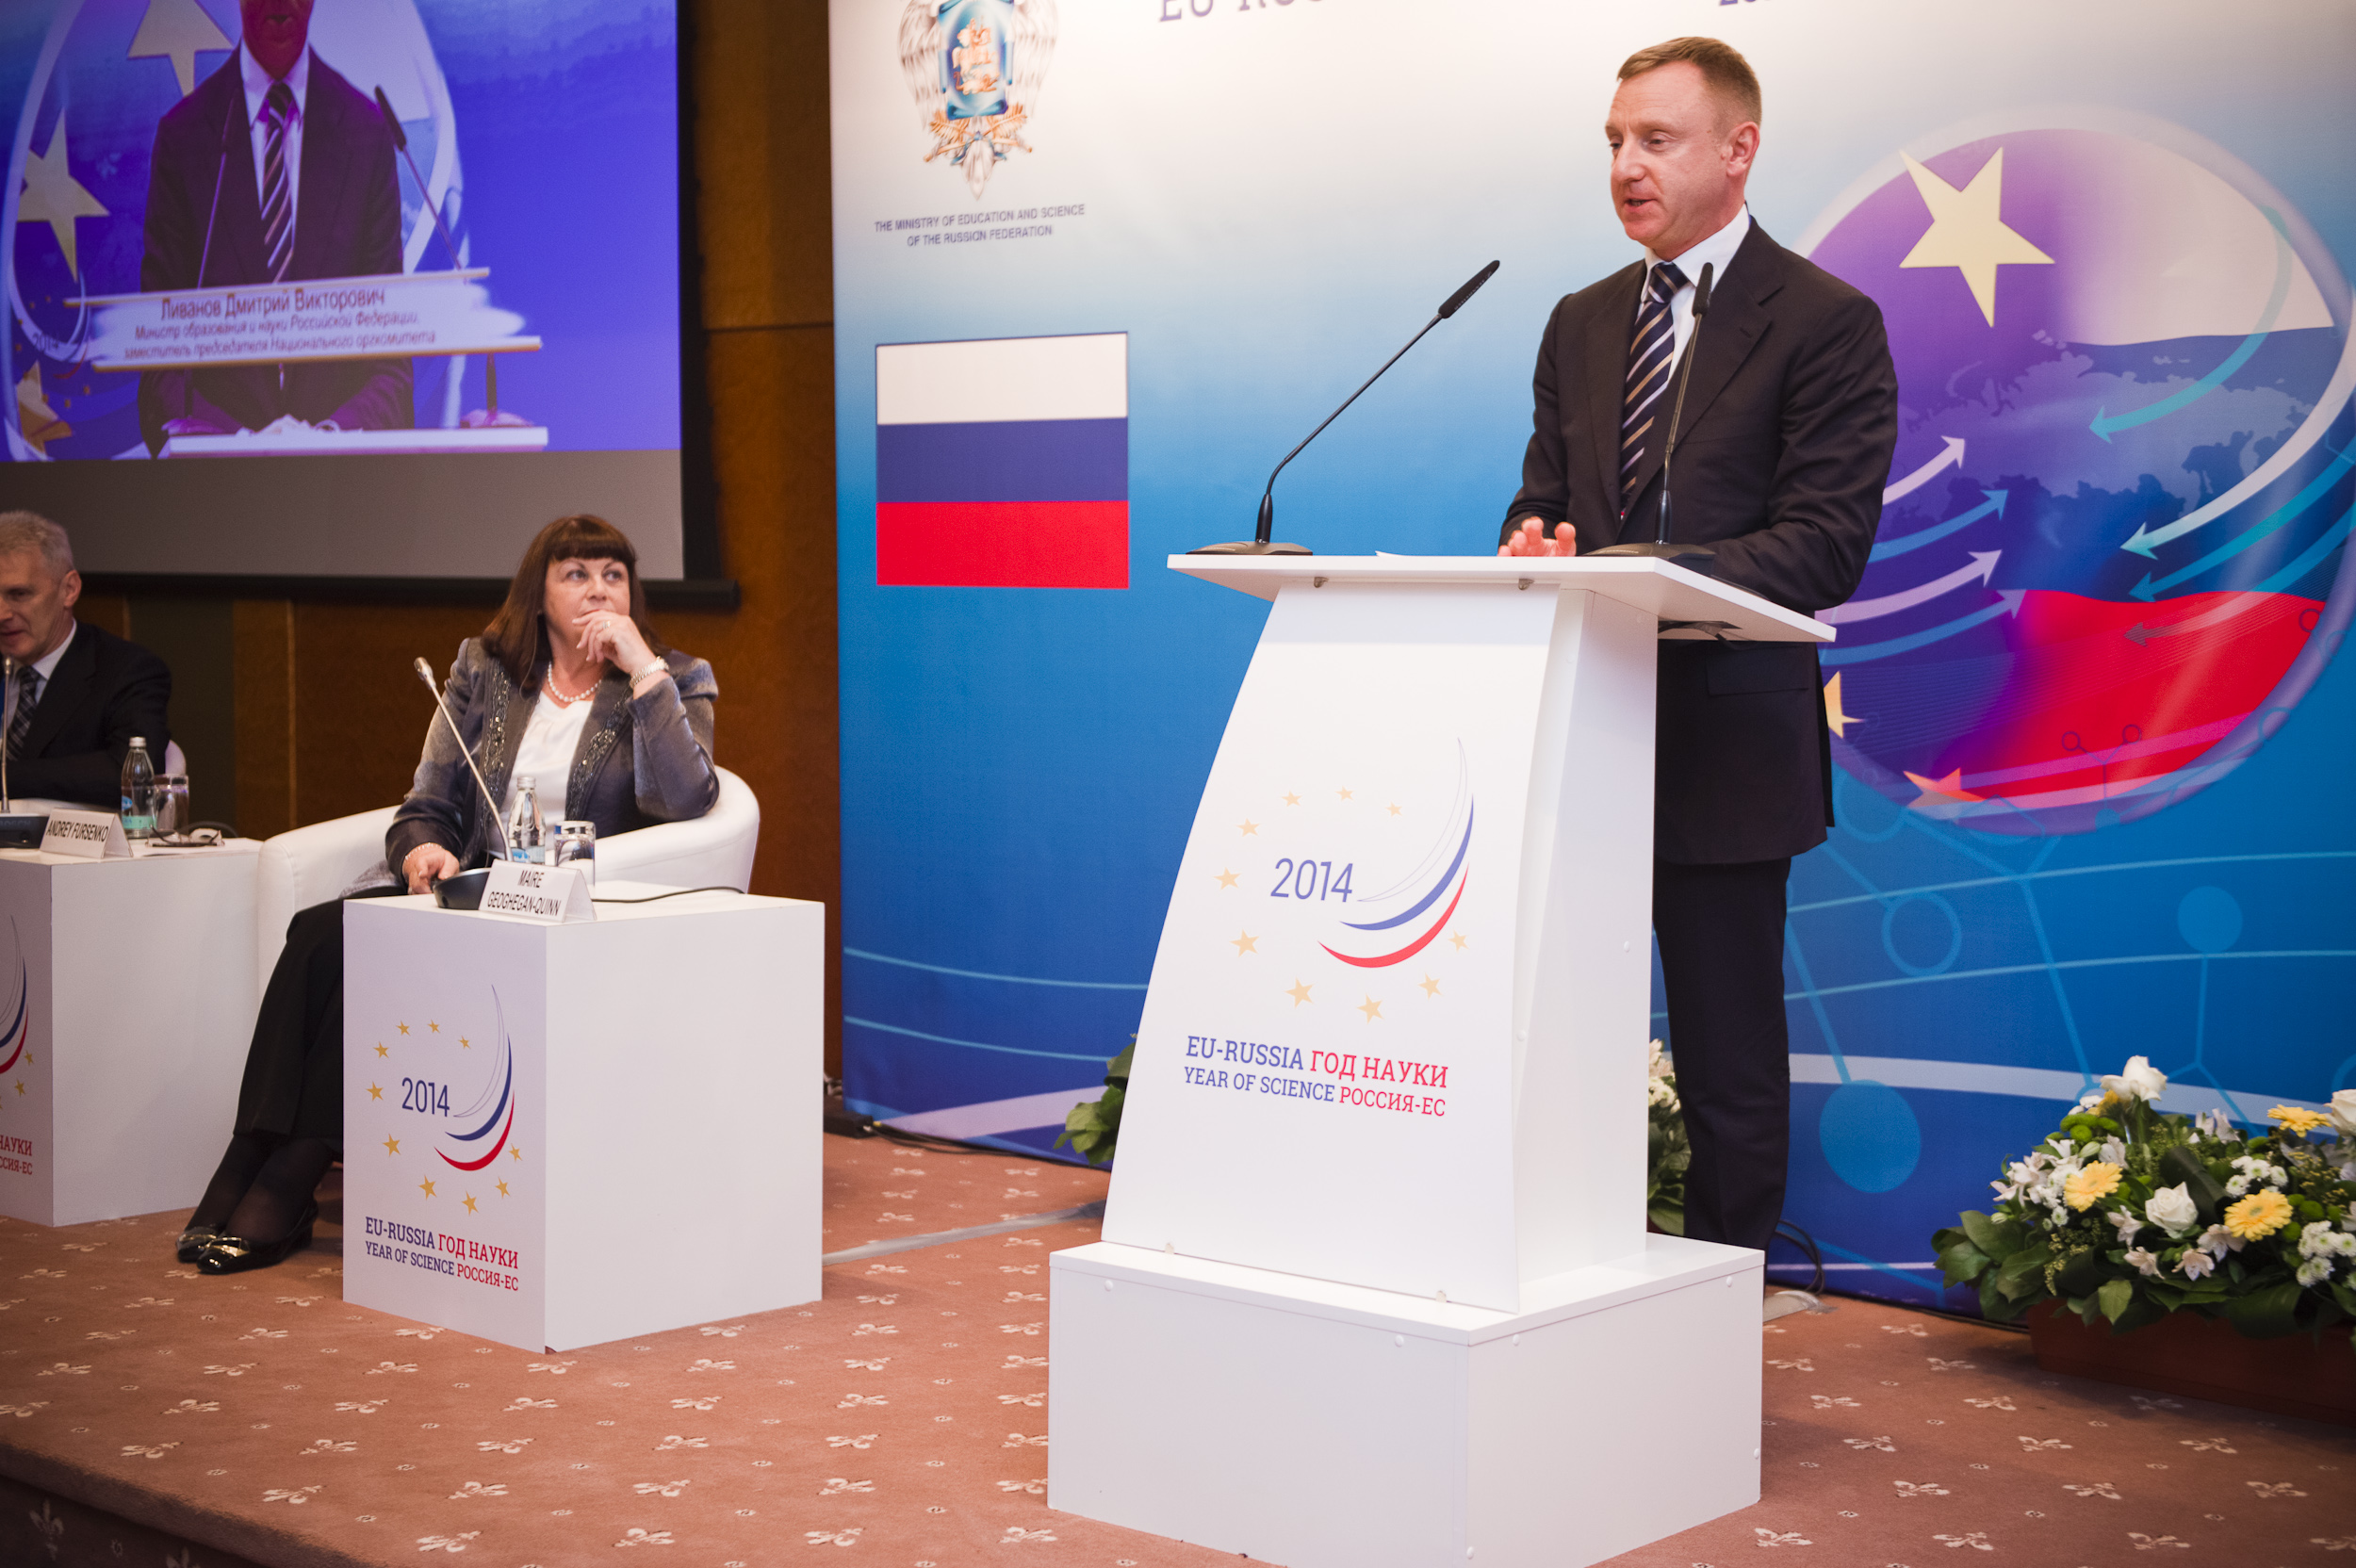 Auftaktveranstaltung zum EU-Russland-Jahr der Wissenschaft mit Minister Livanov und EU-Kommissarin Geoghegan-Quinn